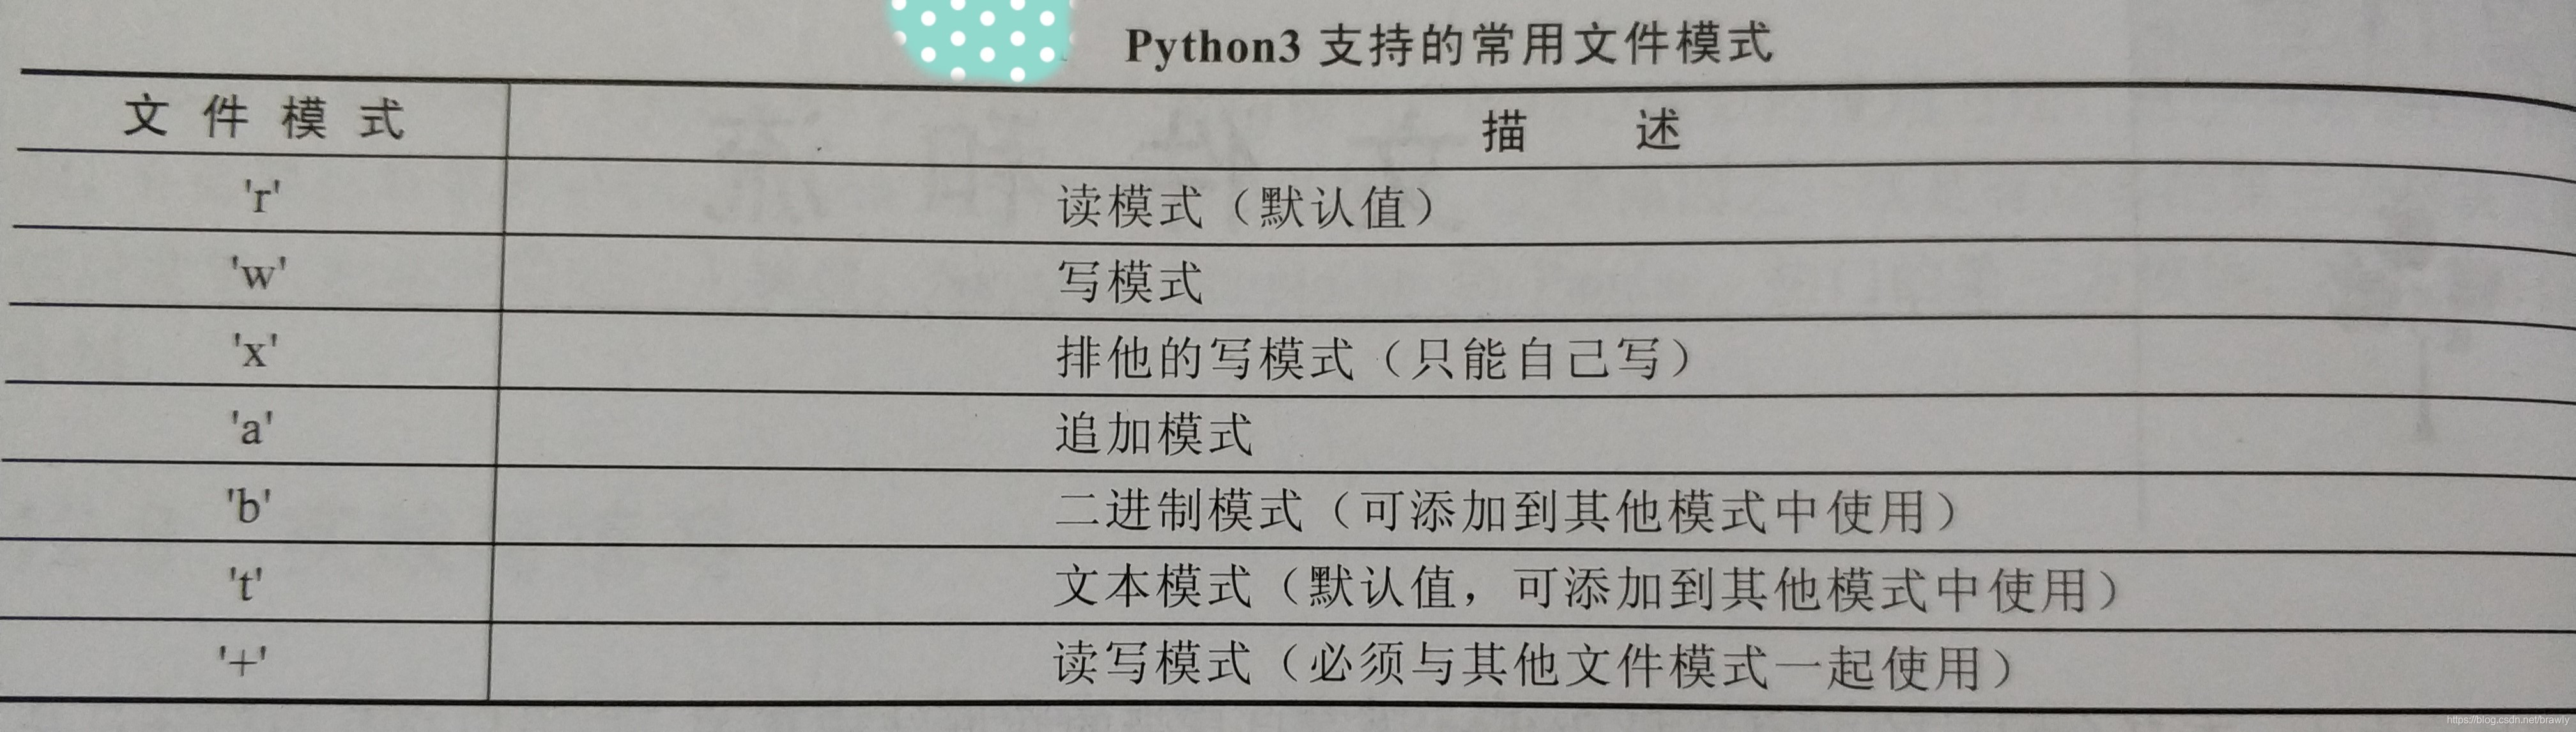 Python中的文件和流